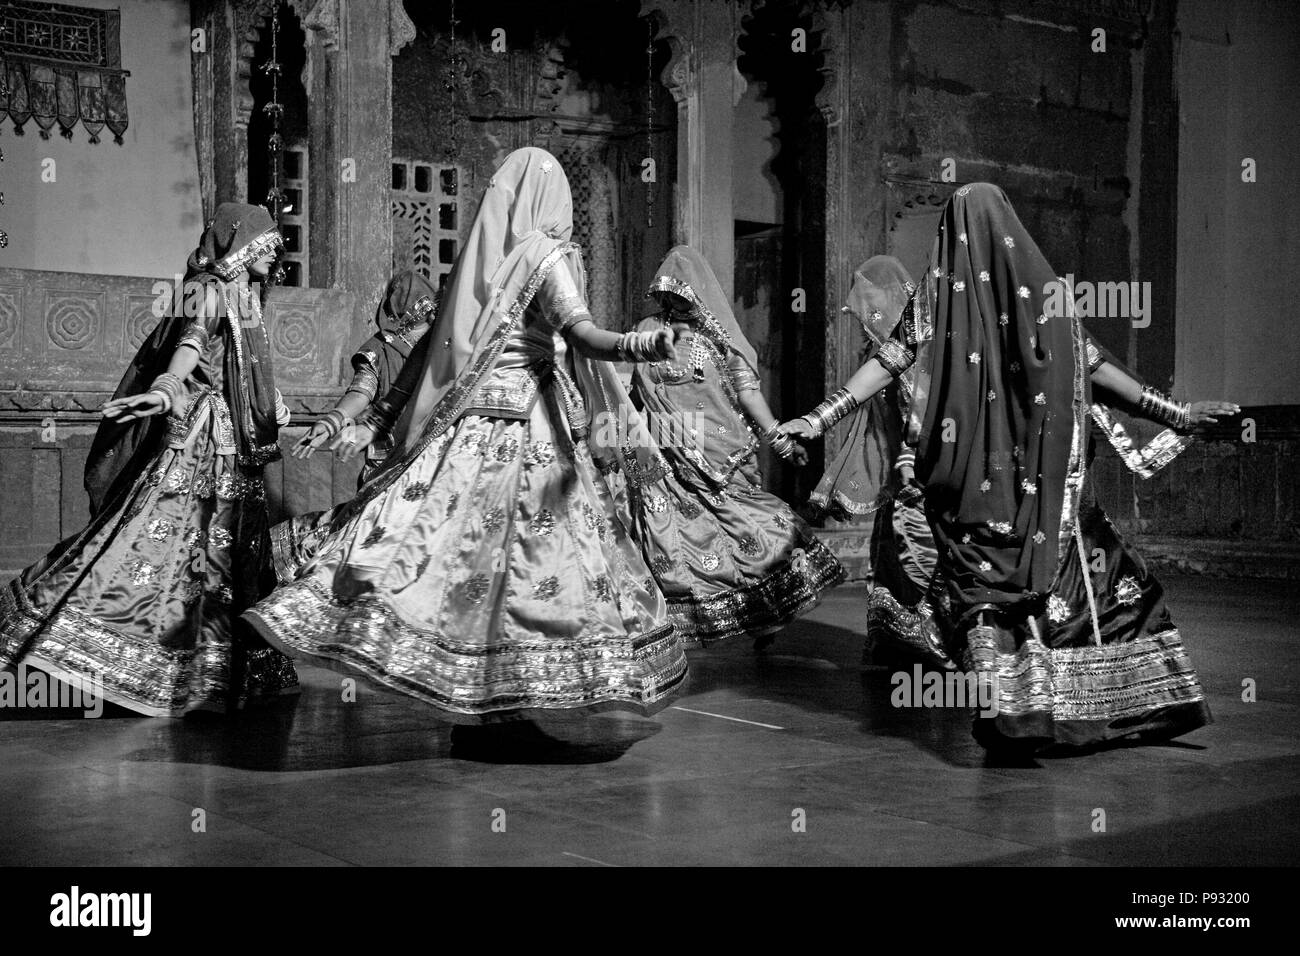 Rajasthani donne eseguire una danza tradizionale nei loro colorati abiti di seta al BAGORE KI HAVELI in Udaipur - Rajasthan, India Foto Stock